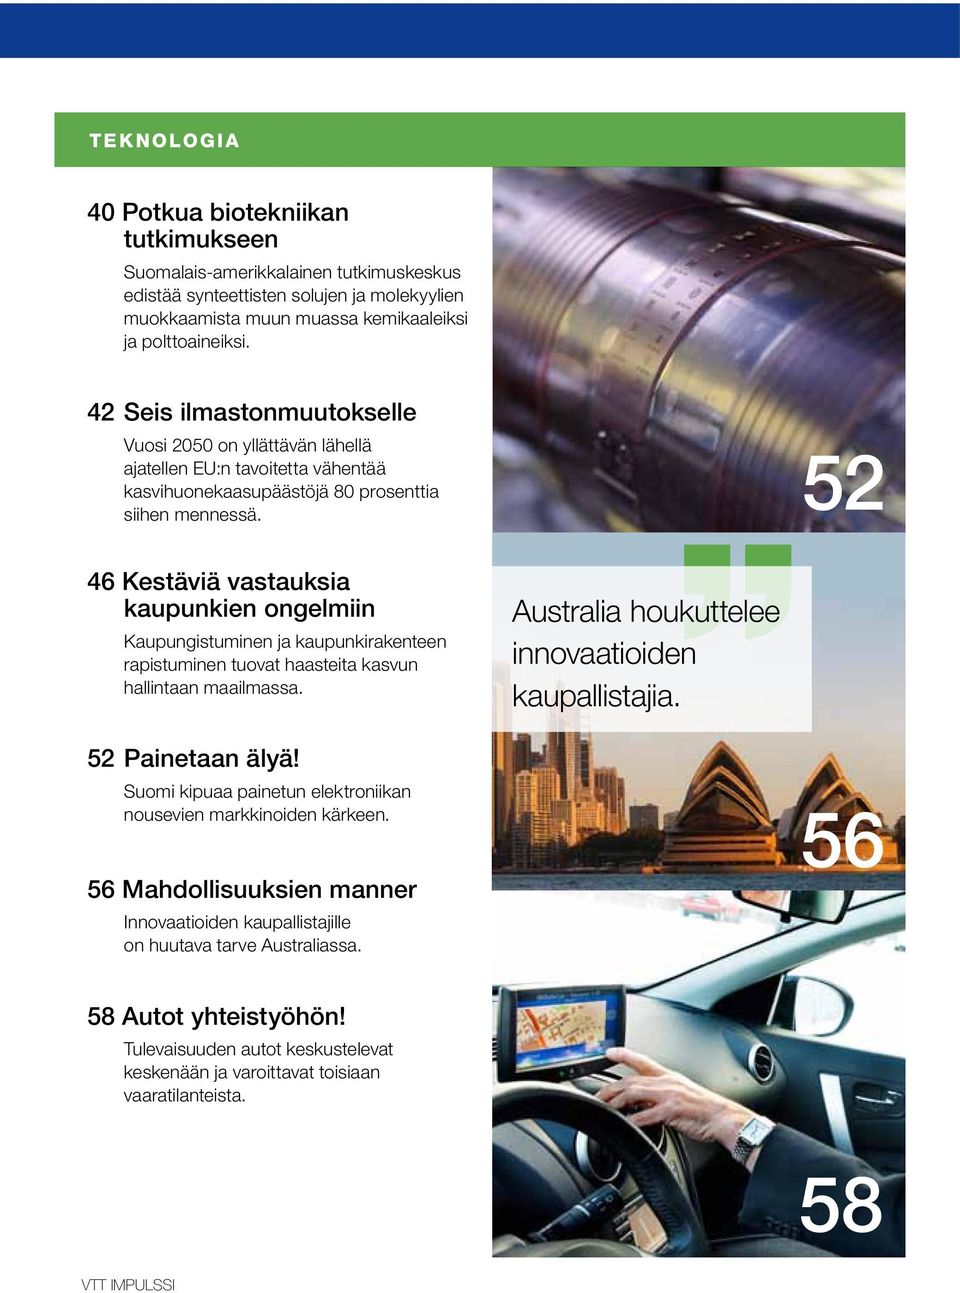 52 46 Kestäviä vastauksia kaupunkien ongelmiin Kaupungistuminen ja kaupunkirakenteen rapistuminen tuovat haasteita kasvun hallintaan maailmassa. Australia houkuttelee innovaatioiden kaupallistajia.